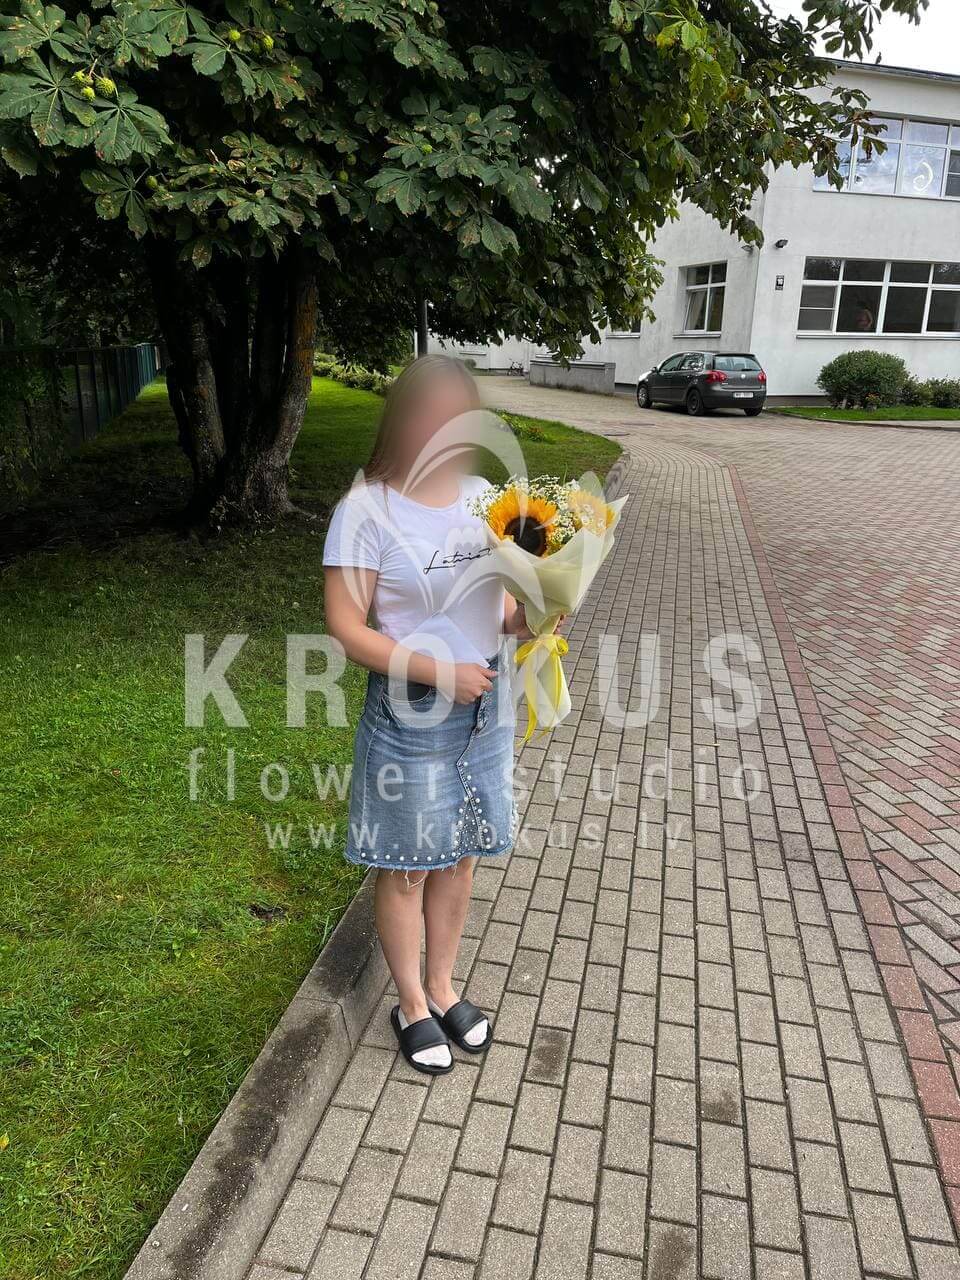 Доставка цветов в город Рига (берграсс
фисташкаподсолнухилимониумромашкисалал)